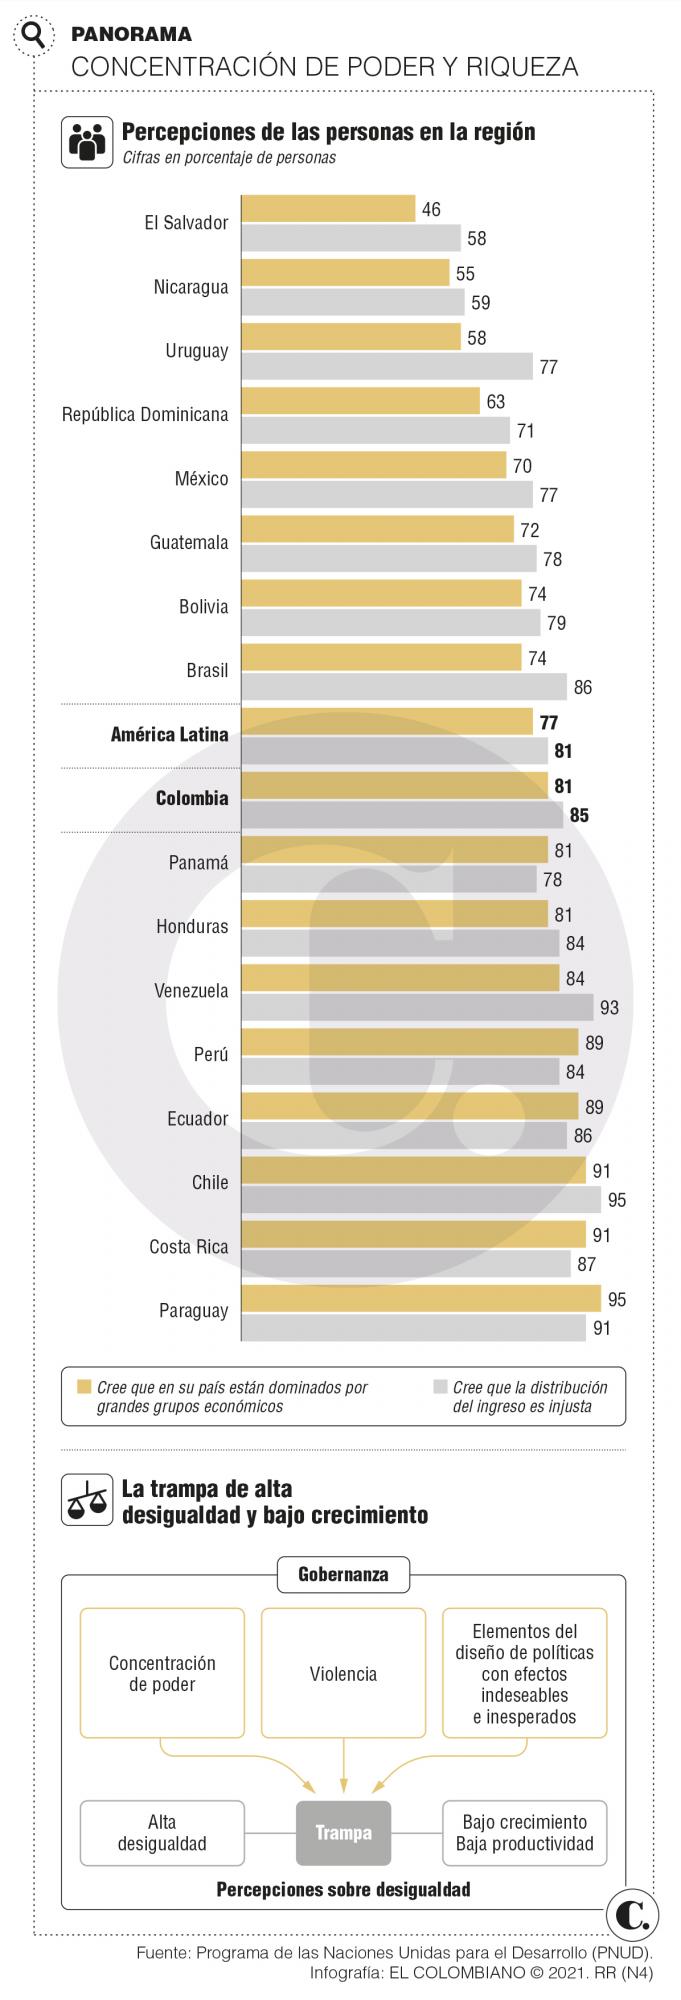 A. Latina debe avanzar contra la desigualdad 